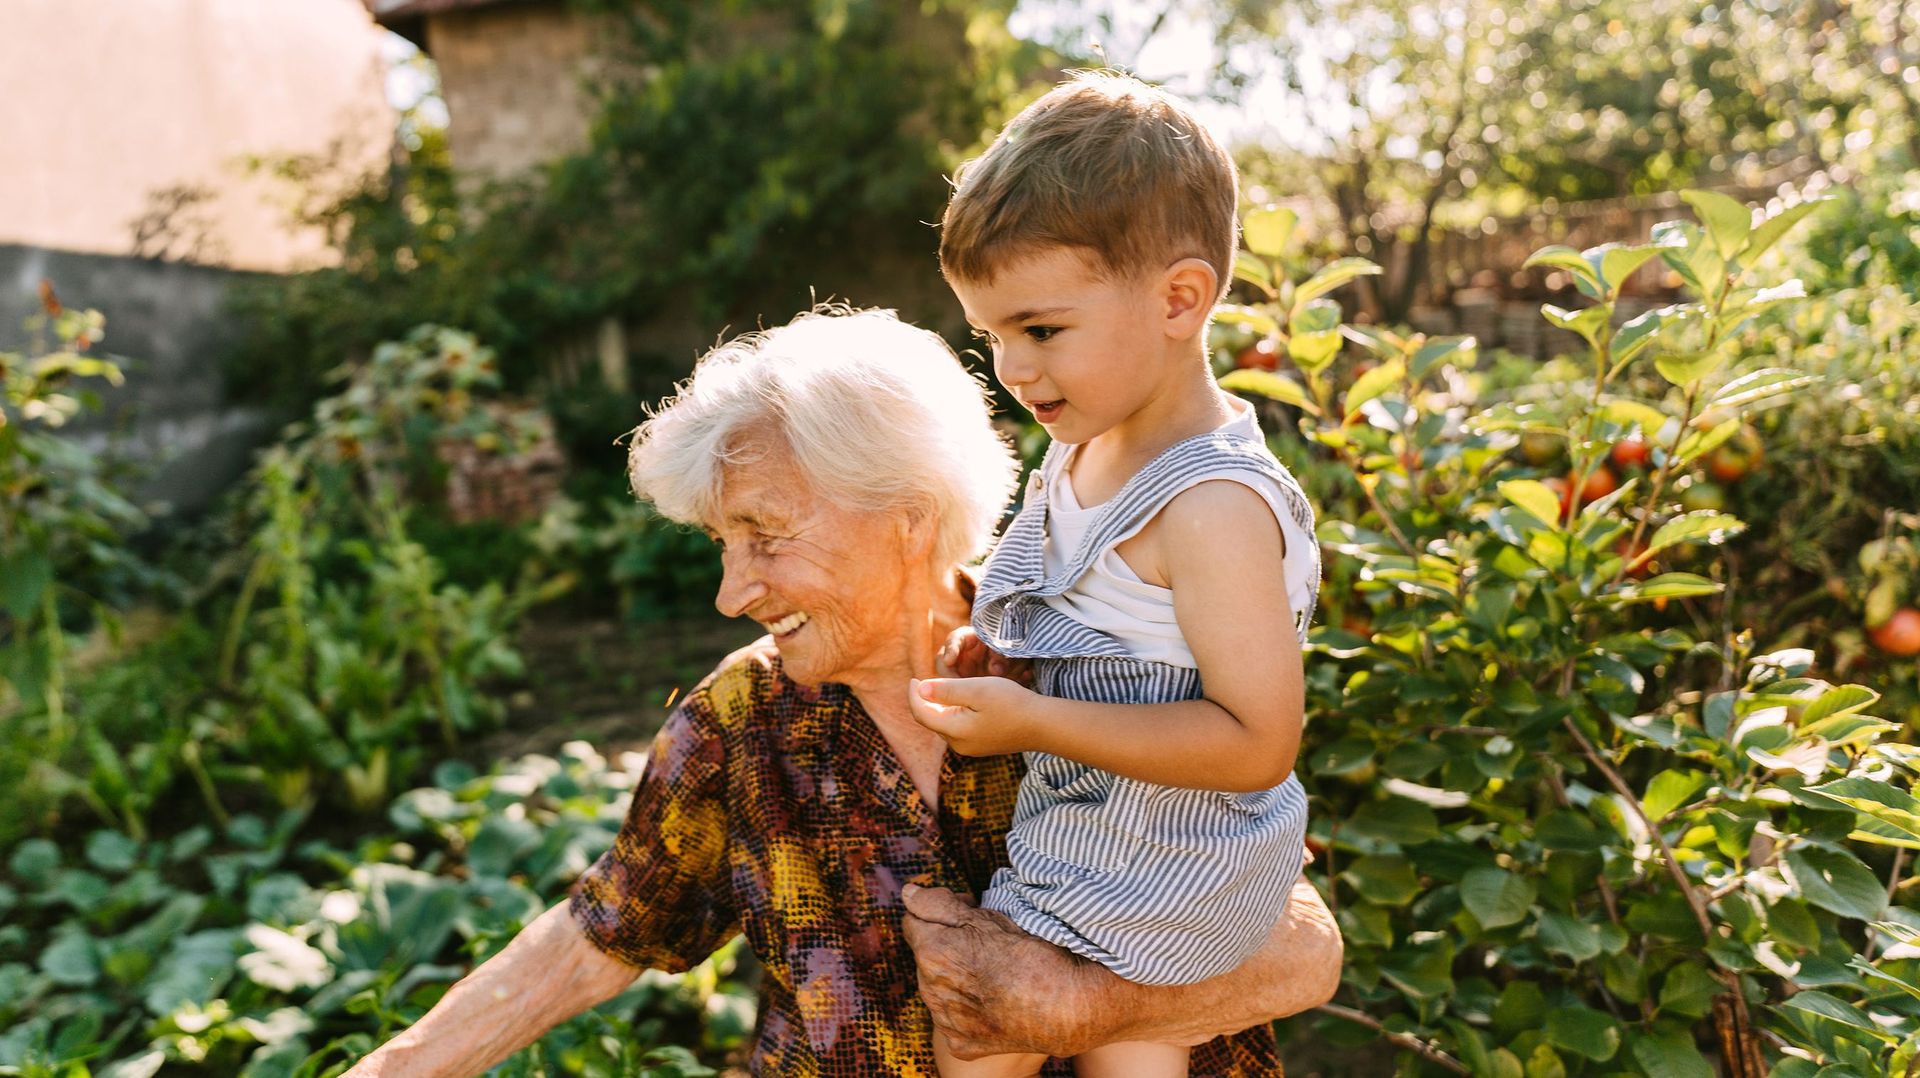 Les grands-mères ont un fort instinct de protection envers leurs petits-enfants, et sont biologiquement bien équipées pour s’attacher à eux.